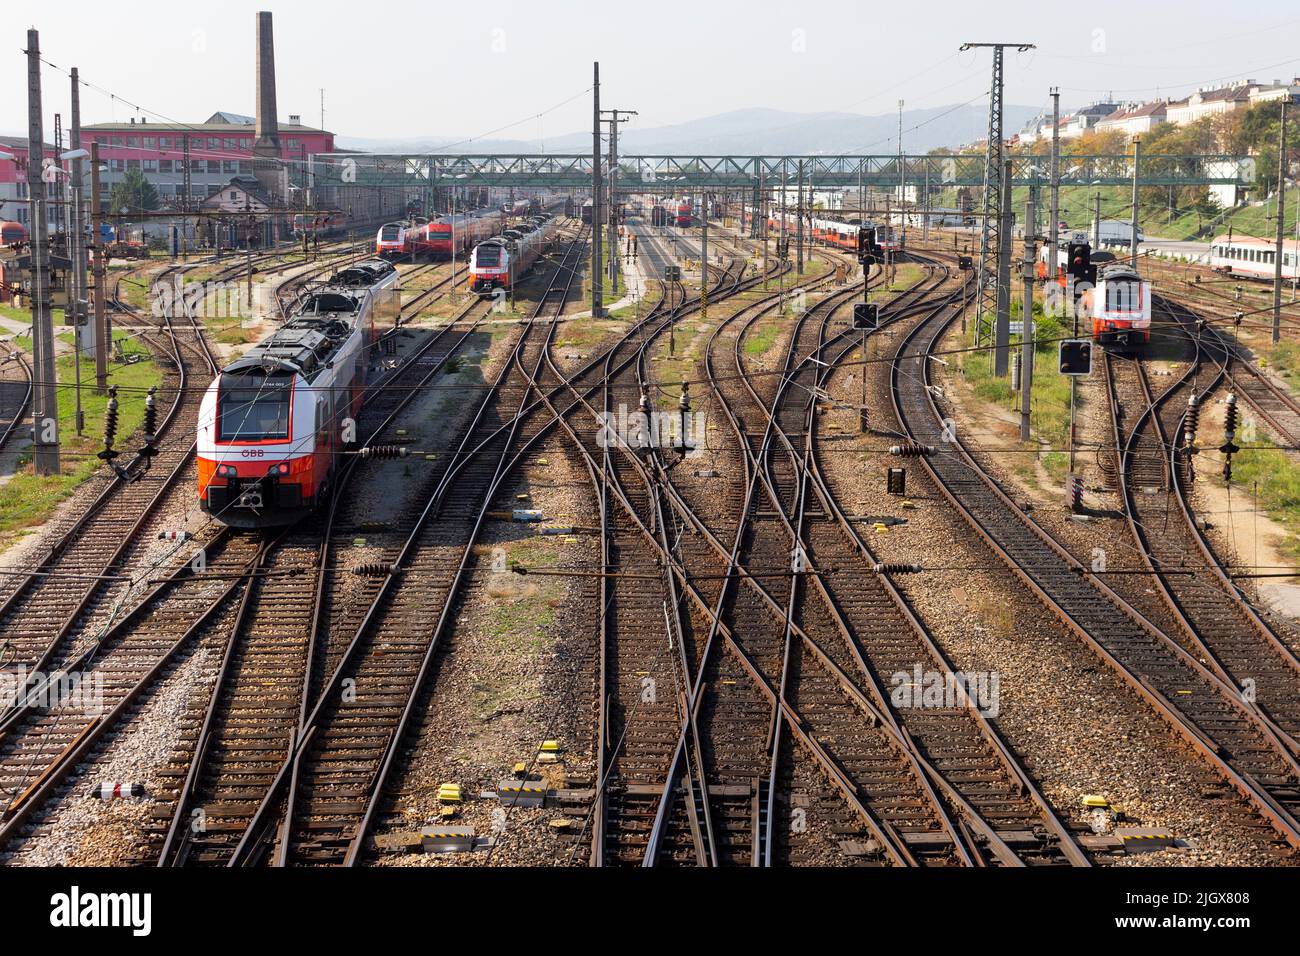 VIENNE, AUTRICHE - 11 octobre 2018 : Westbahnhof (gare de l'Ouest) et ses voies ferrées et trains à Vienne, Autriche Banque D'Images